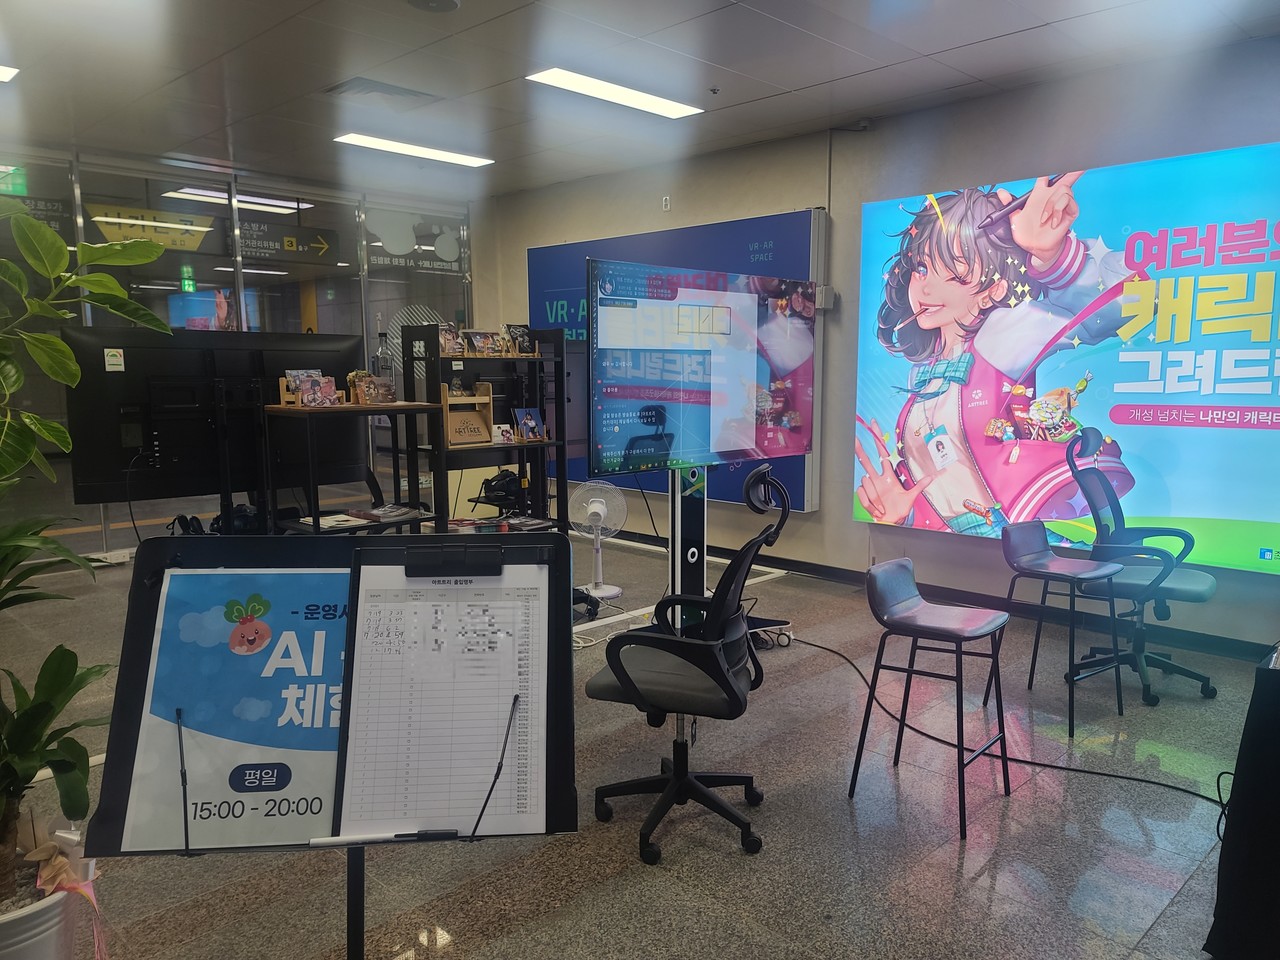 20일 광주 지하철 금남로 4가역 3번 출구에 위치한 'AI 문화 체험관' 모습. 7월 19일부터 20일까지 6명이 방문했다.  